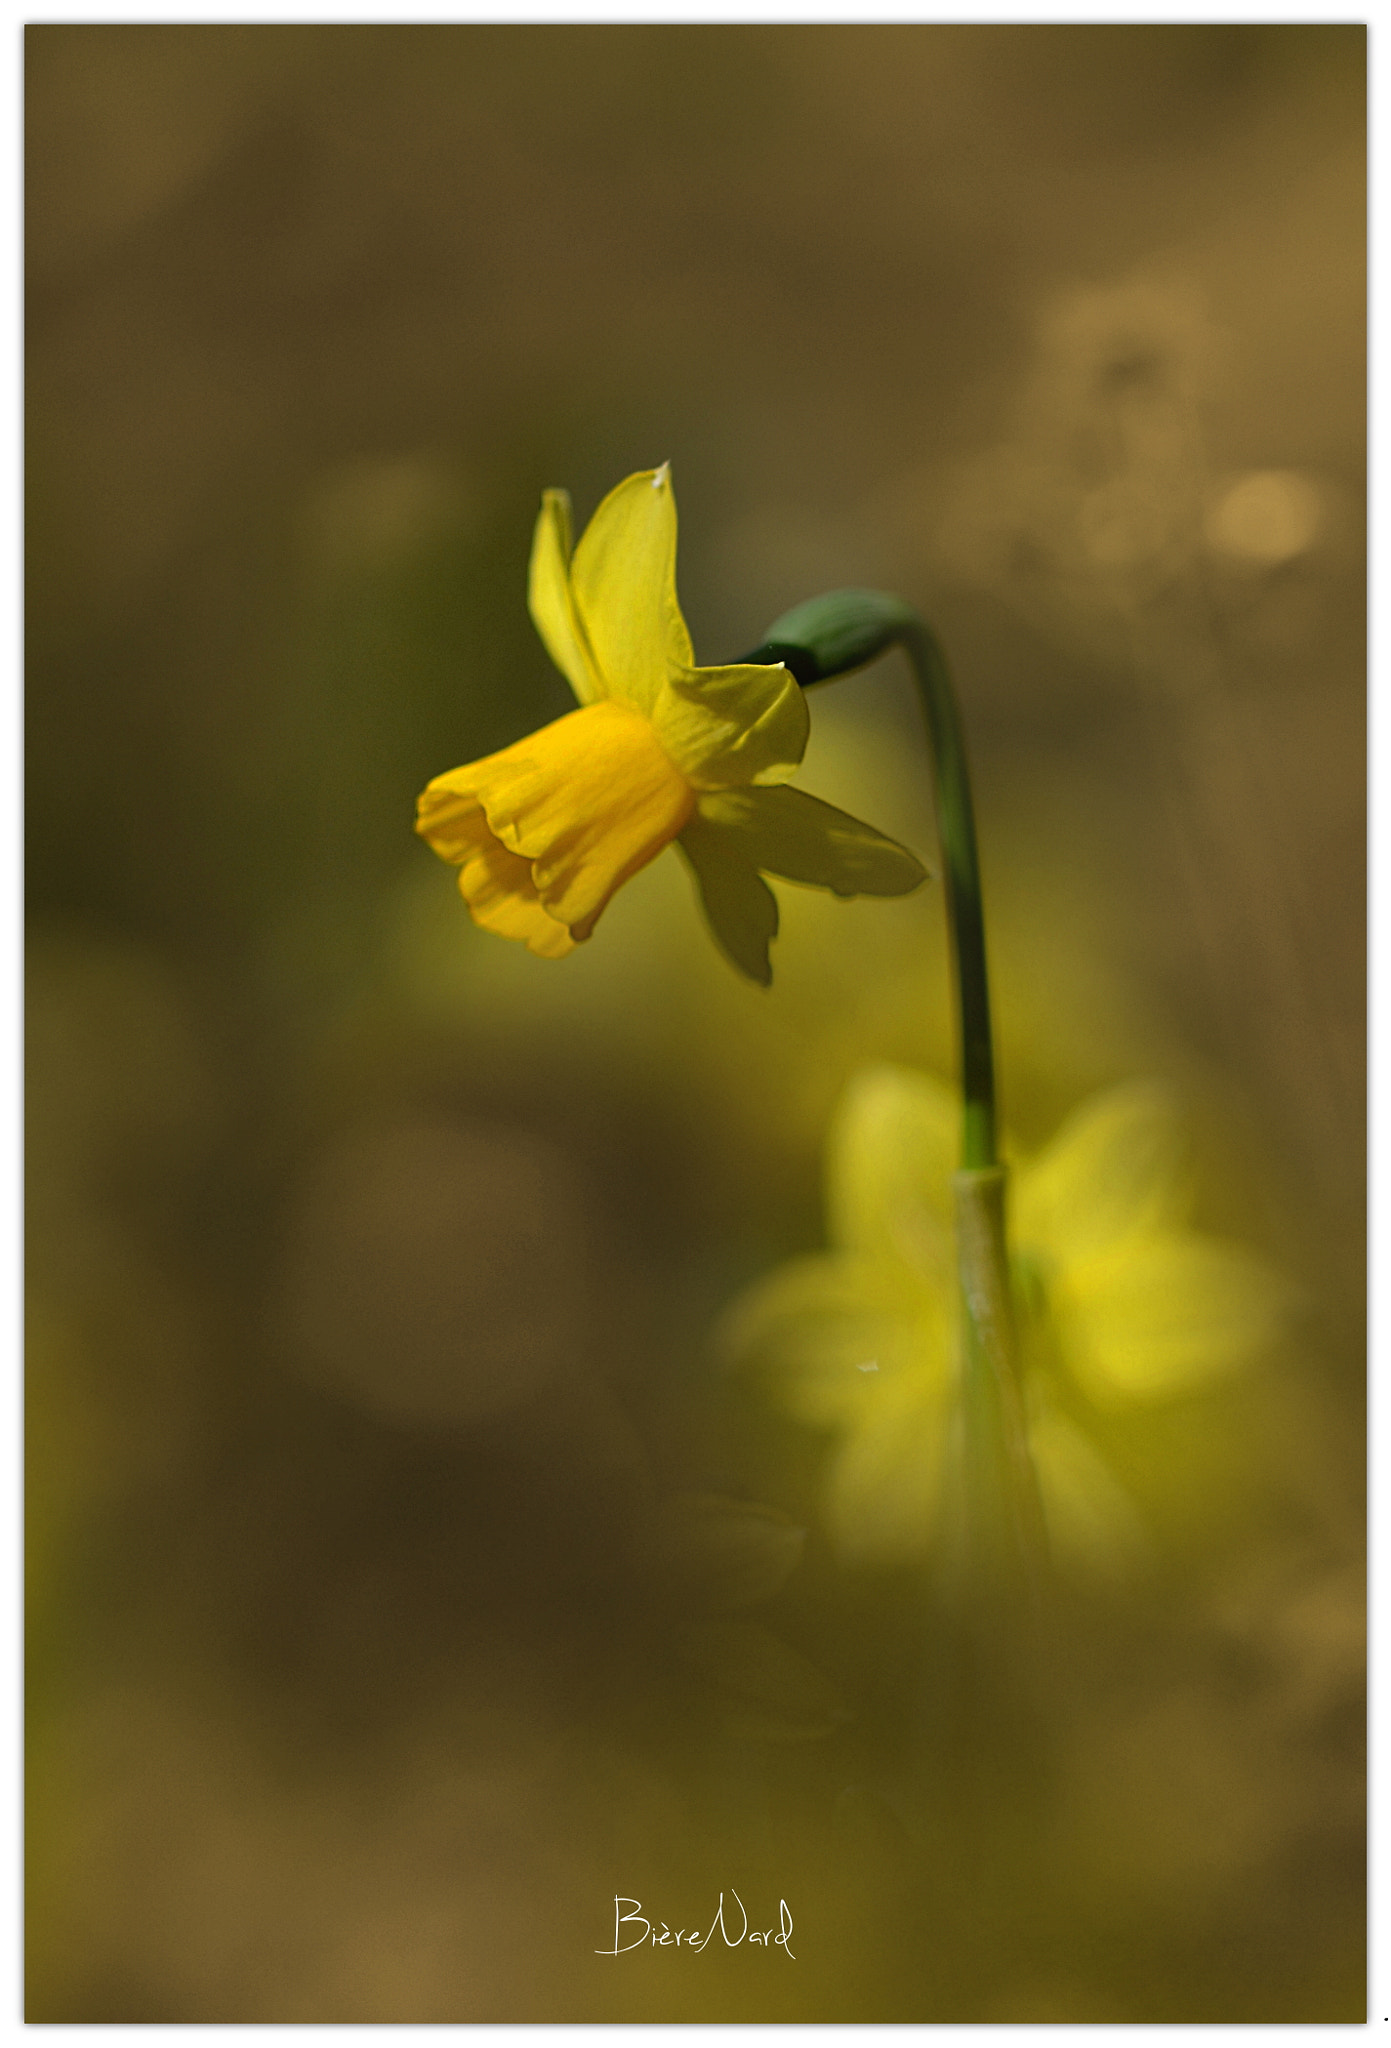 Nikon D3100 + Tamron SP 90mm F2.8 Di VC USD 1:1 Macro (F004) sample photo. Yellow daffodil photography